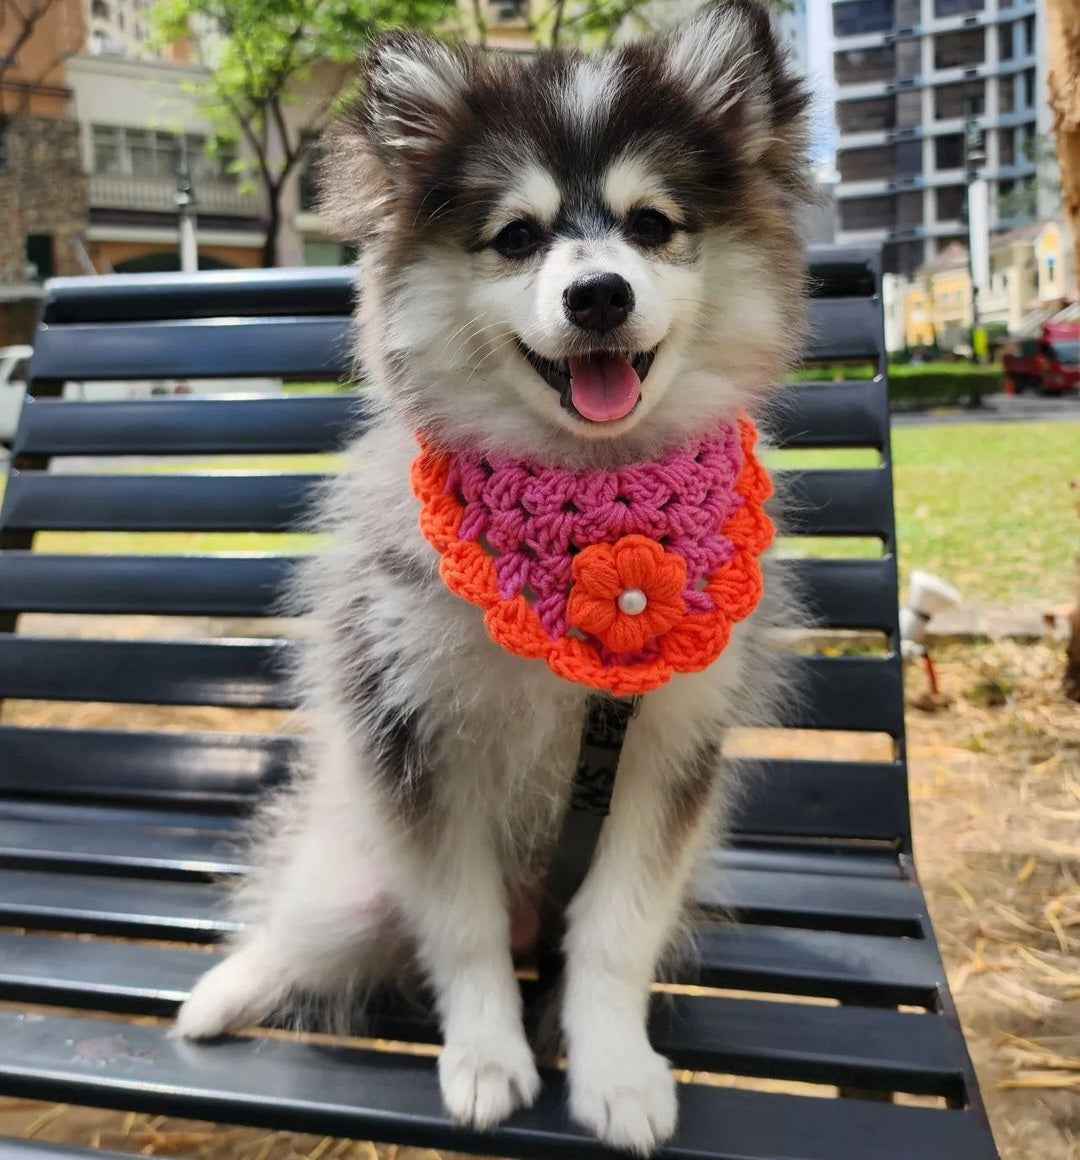 Isla Marikit Adjustable Pet Bandana Crochet